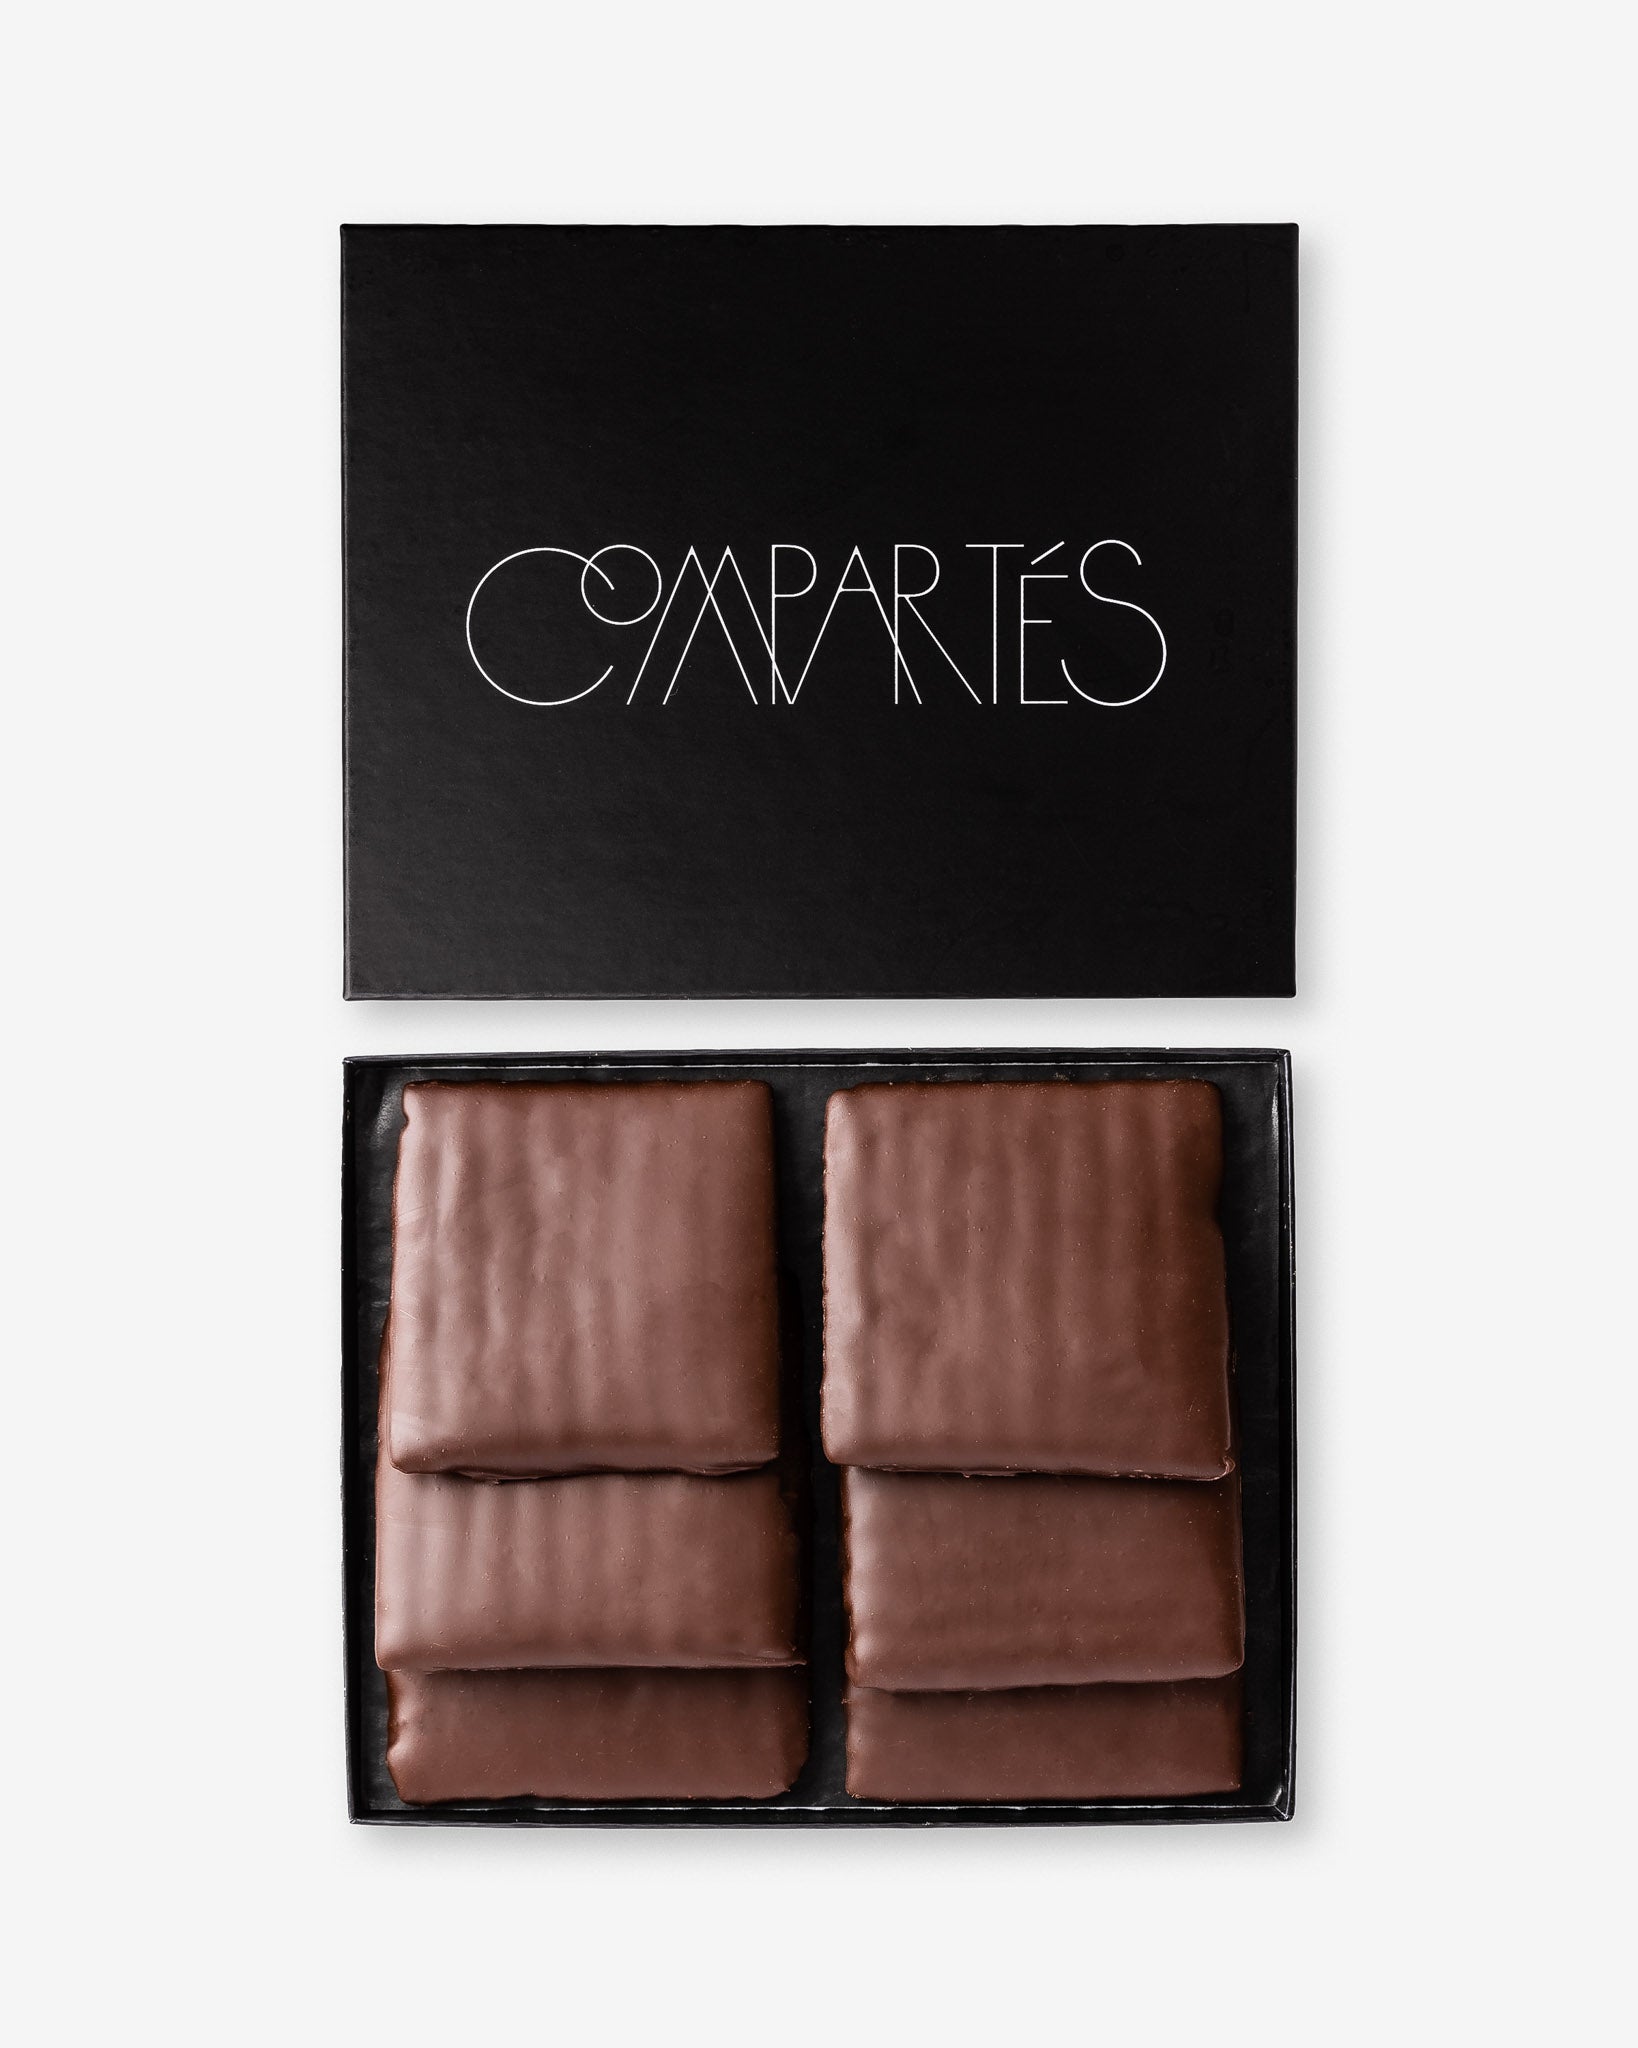 Gourmet Chocolate Gifts - Luxury Dark Chocolate Covered Matzah Gift Box - Vegan